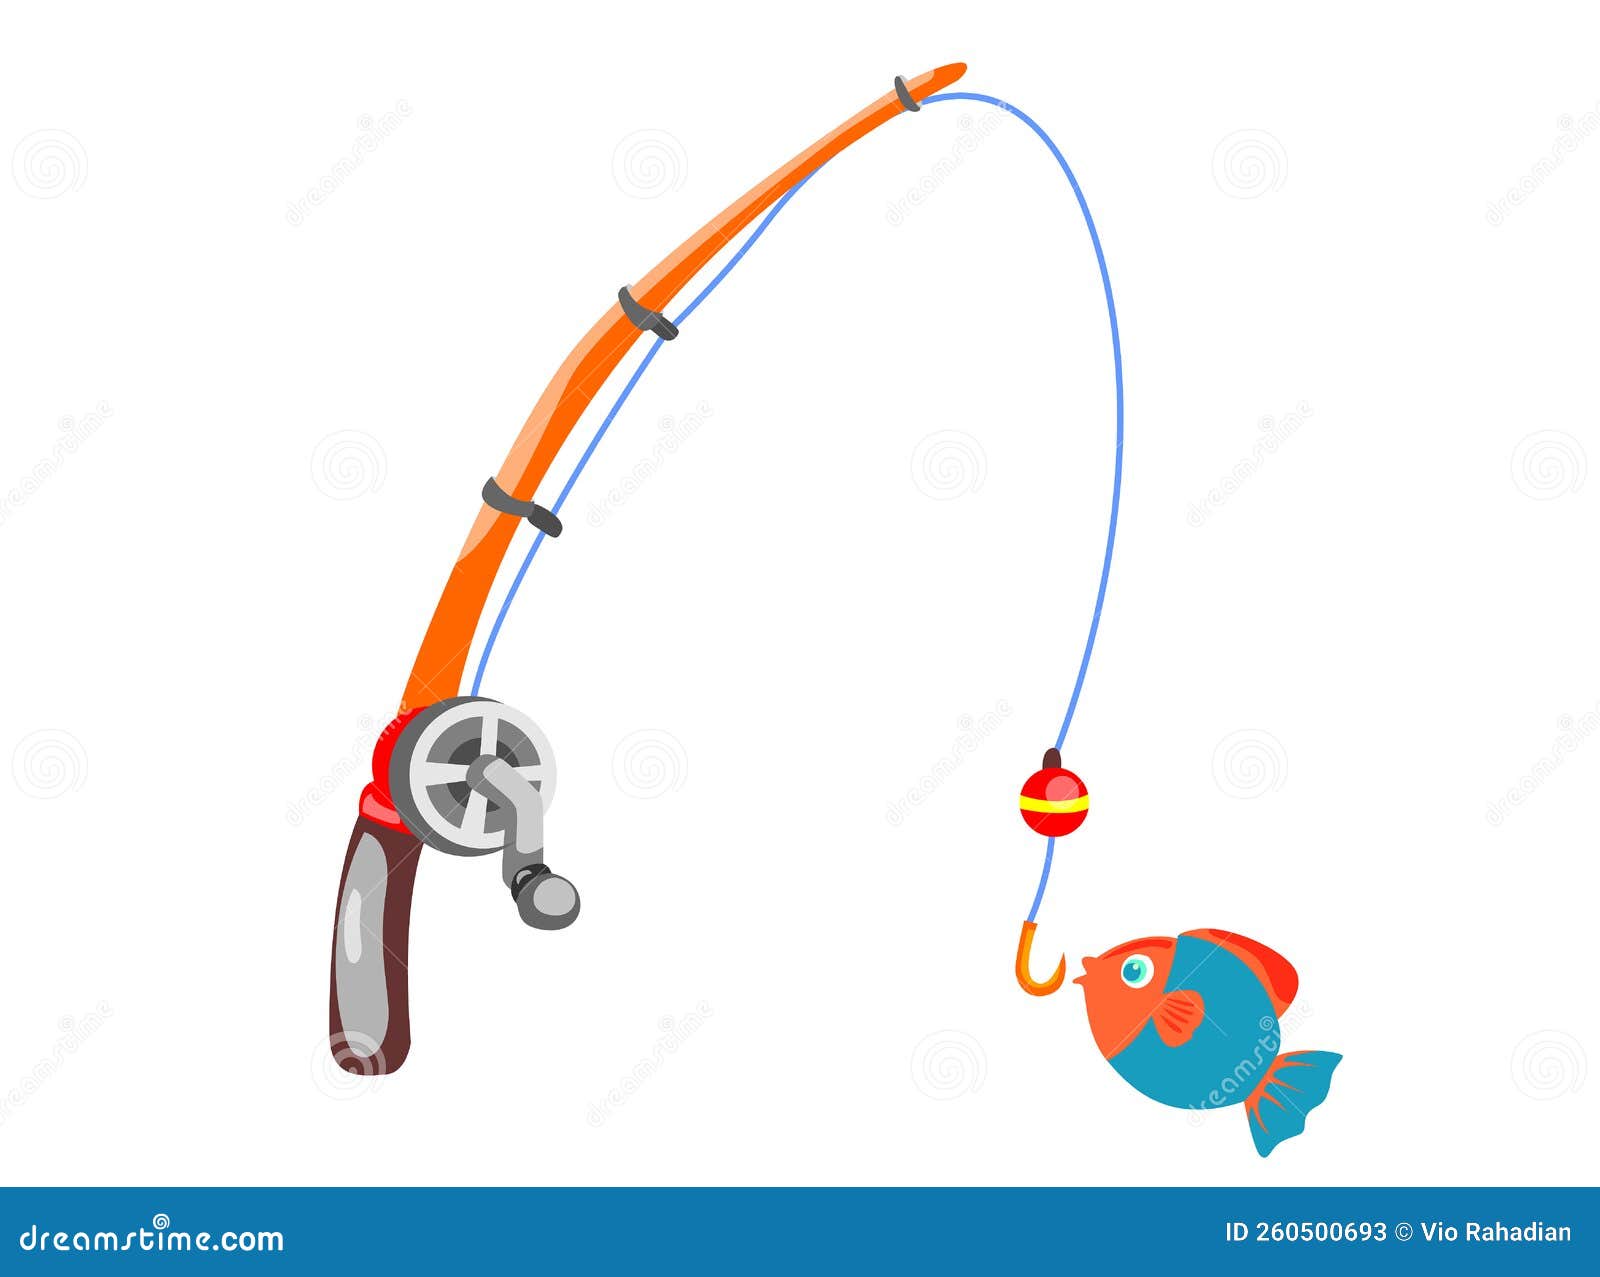 Fishing Rod Cartoon Isolated on White Stock Image - Image of